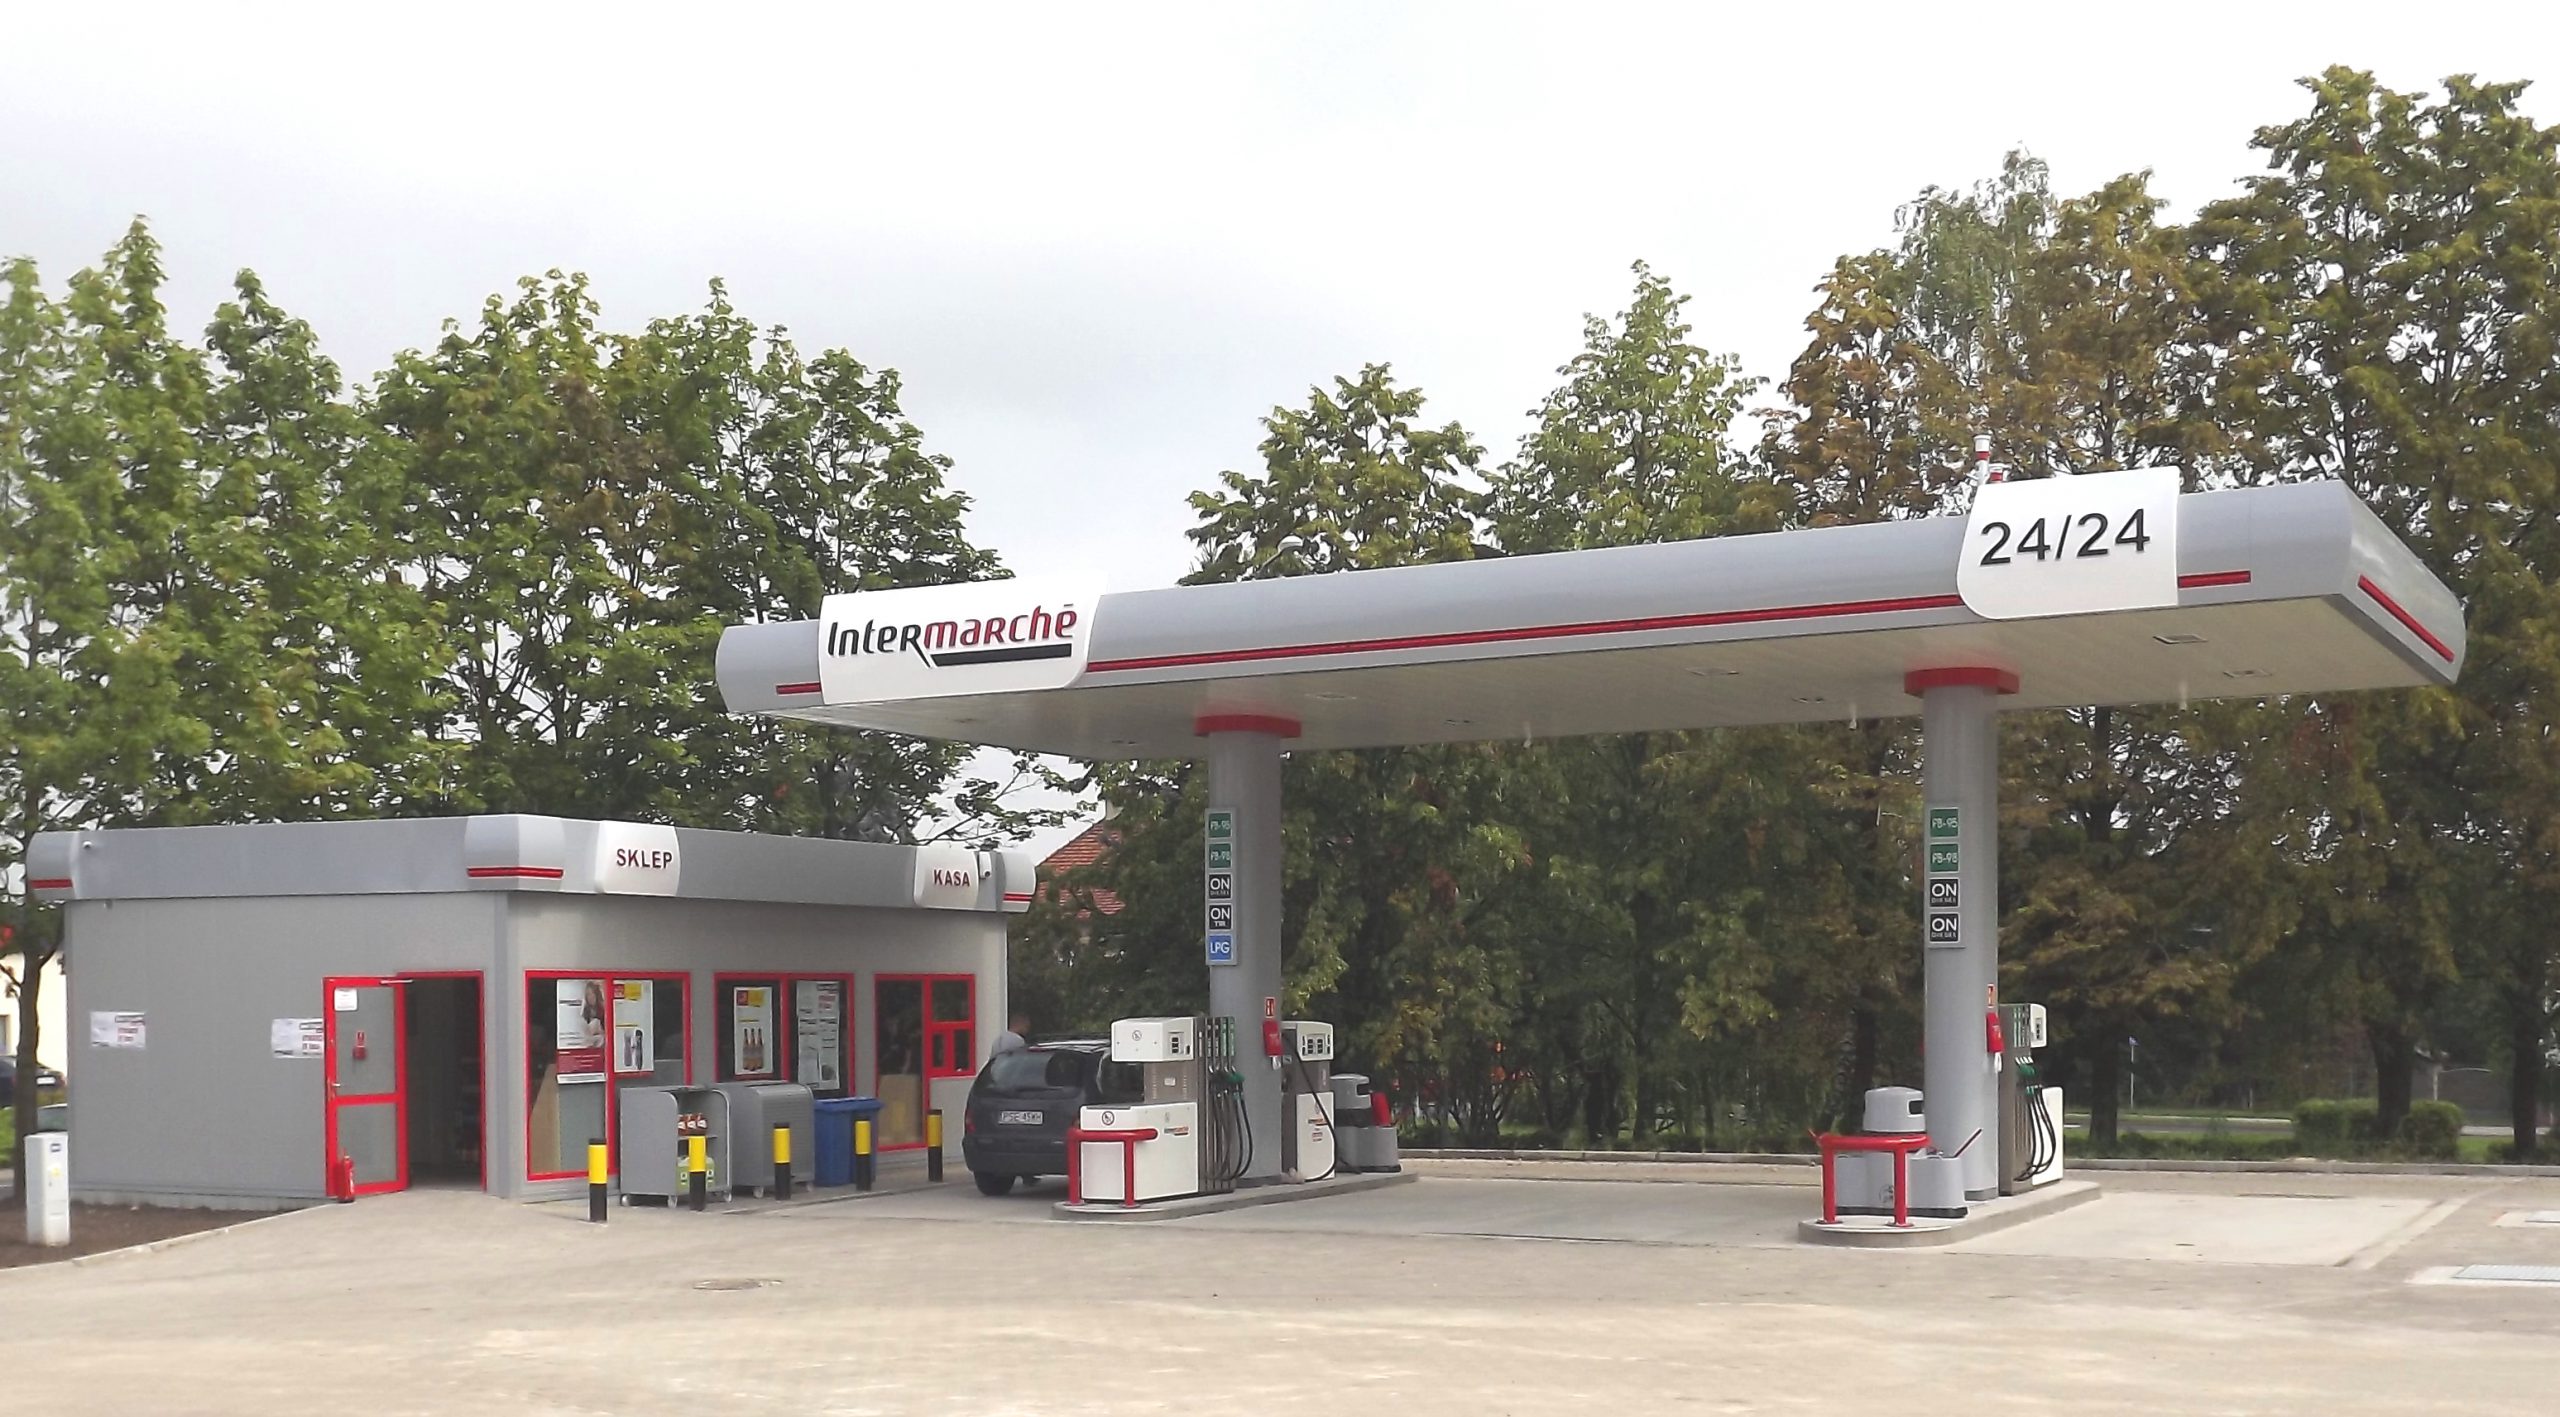 Sieć Intermarché otworzyła 62 stację paliw